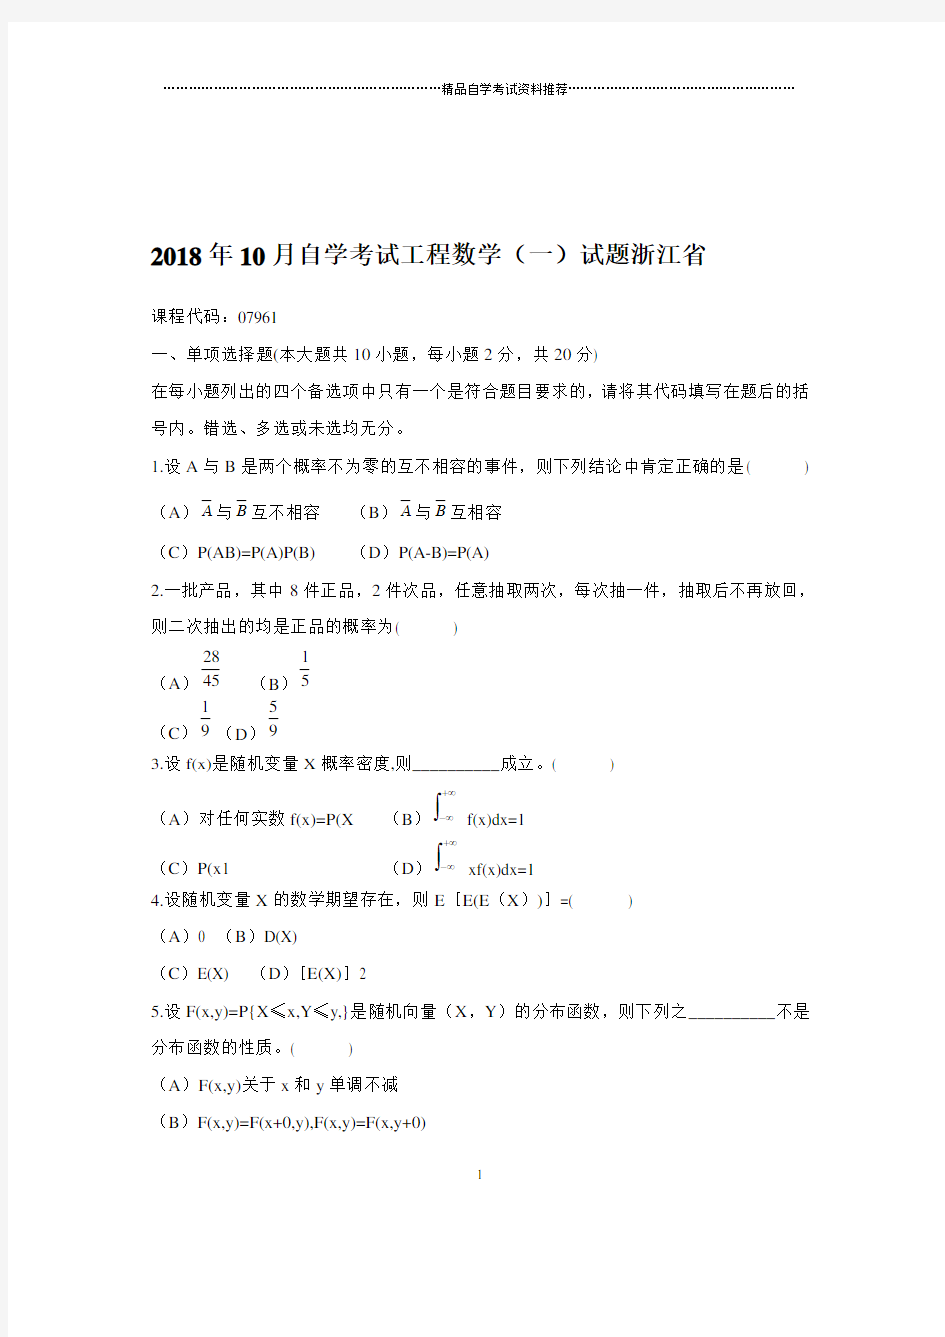 2020年10月自学考试工程数学(一)试题及答案解析浙江